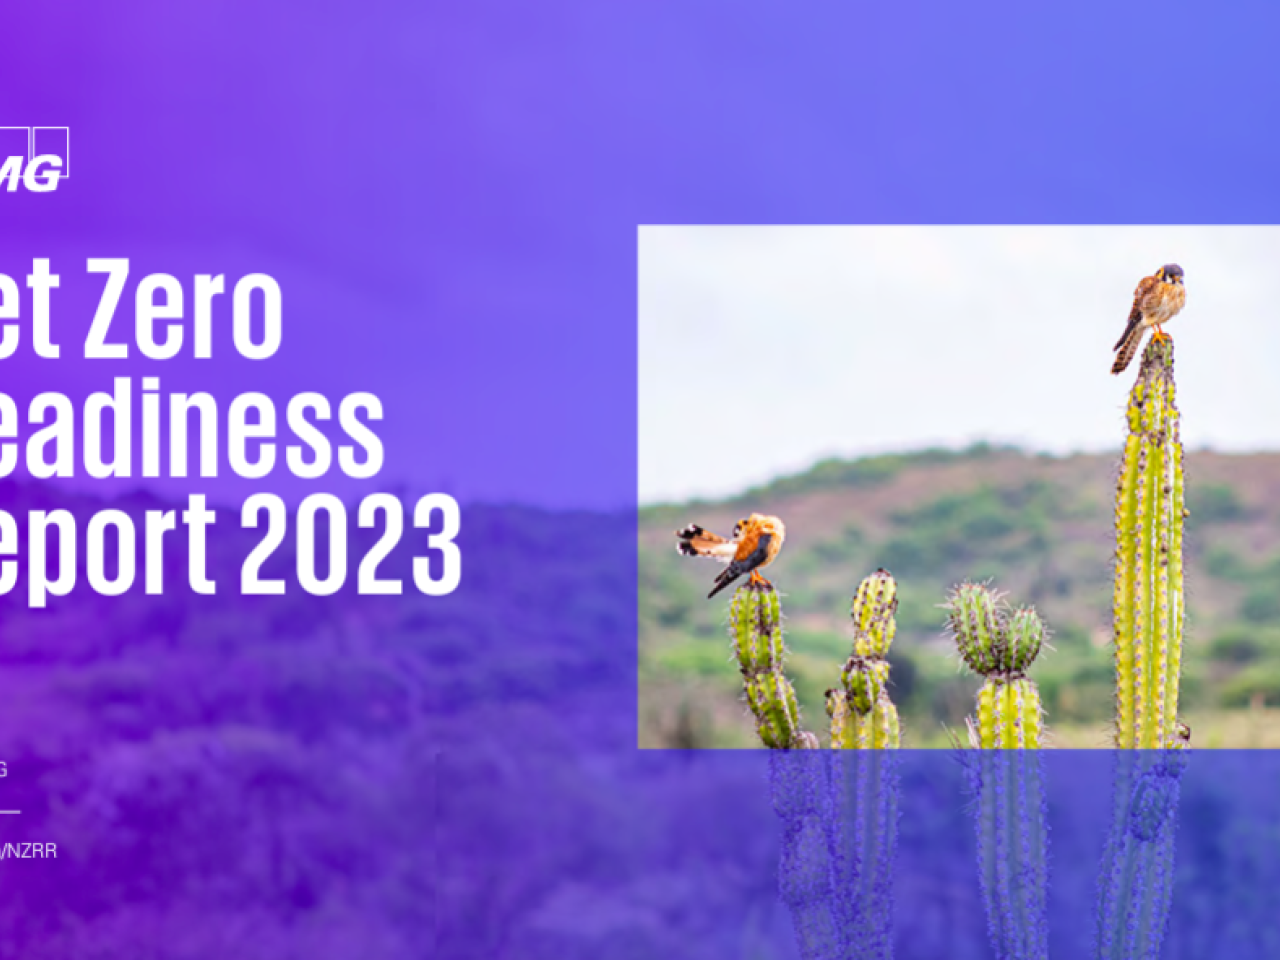 "Net Zero Readiness Report 2023"